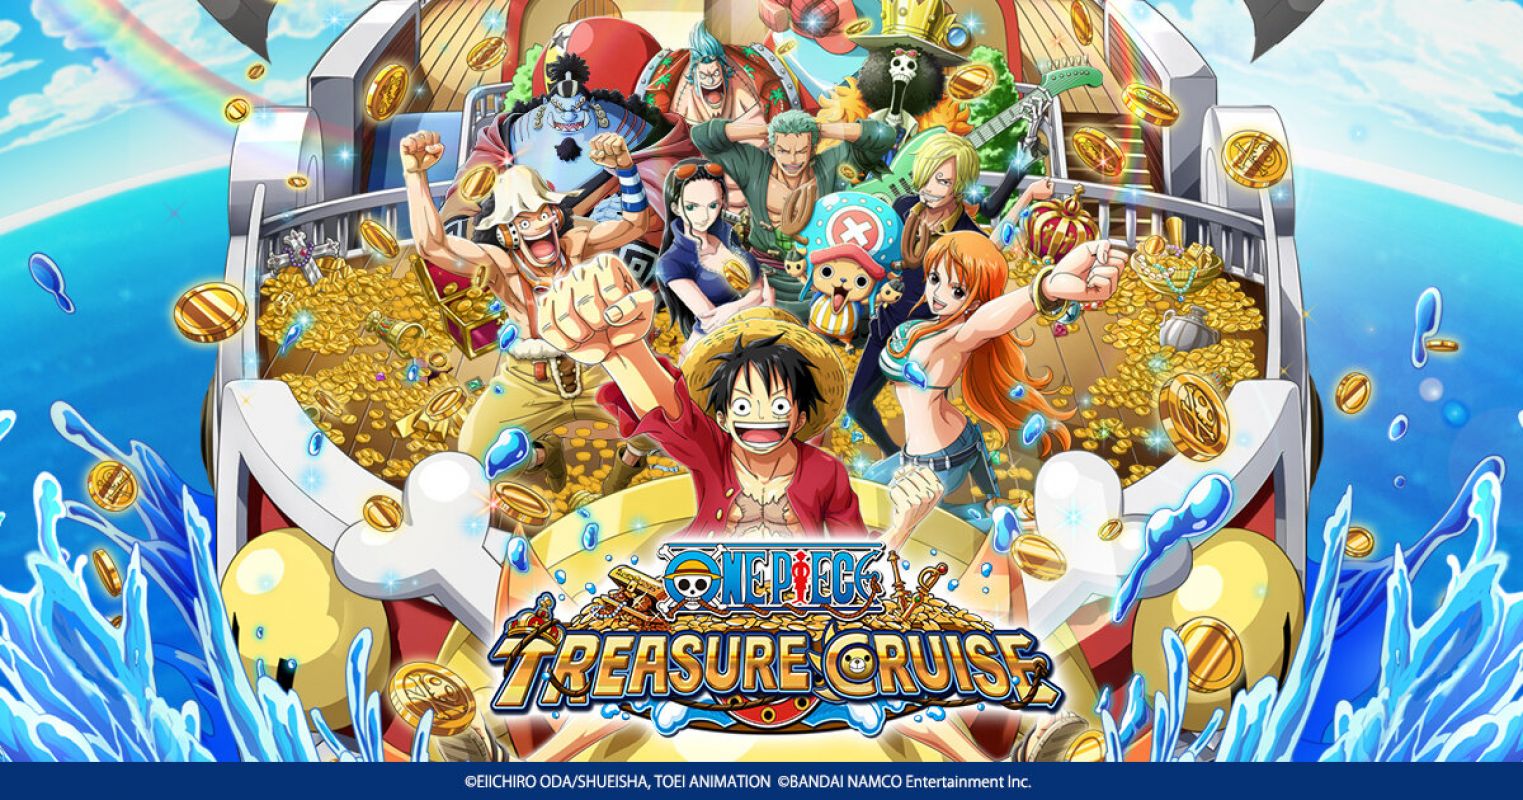 Personnages exclusifs, avantages et cadeaux ! One Piece Treasure Cruise fête son 8ème anniversaire au pays des WANO